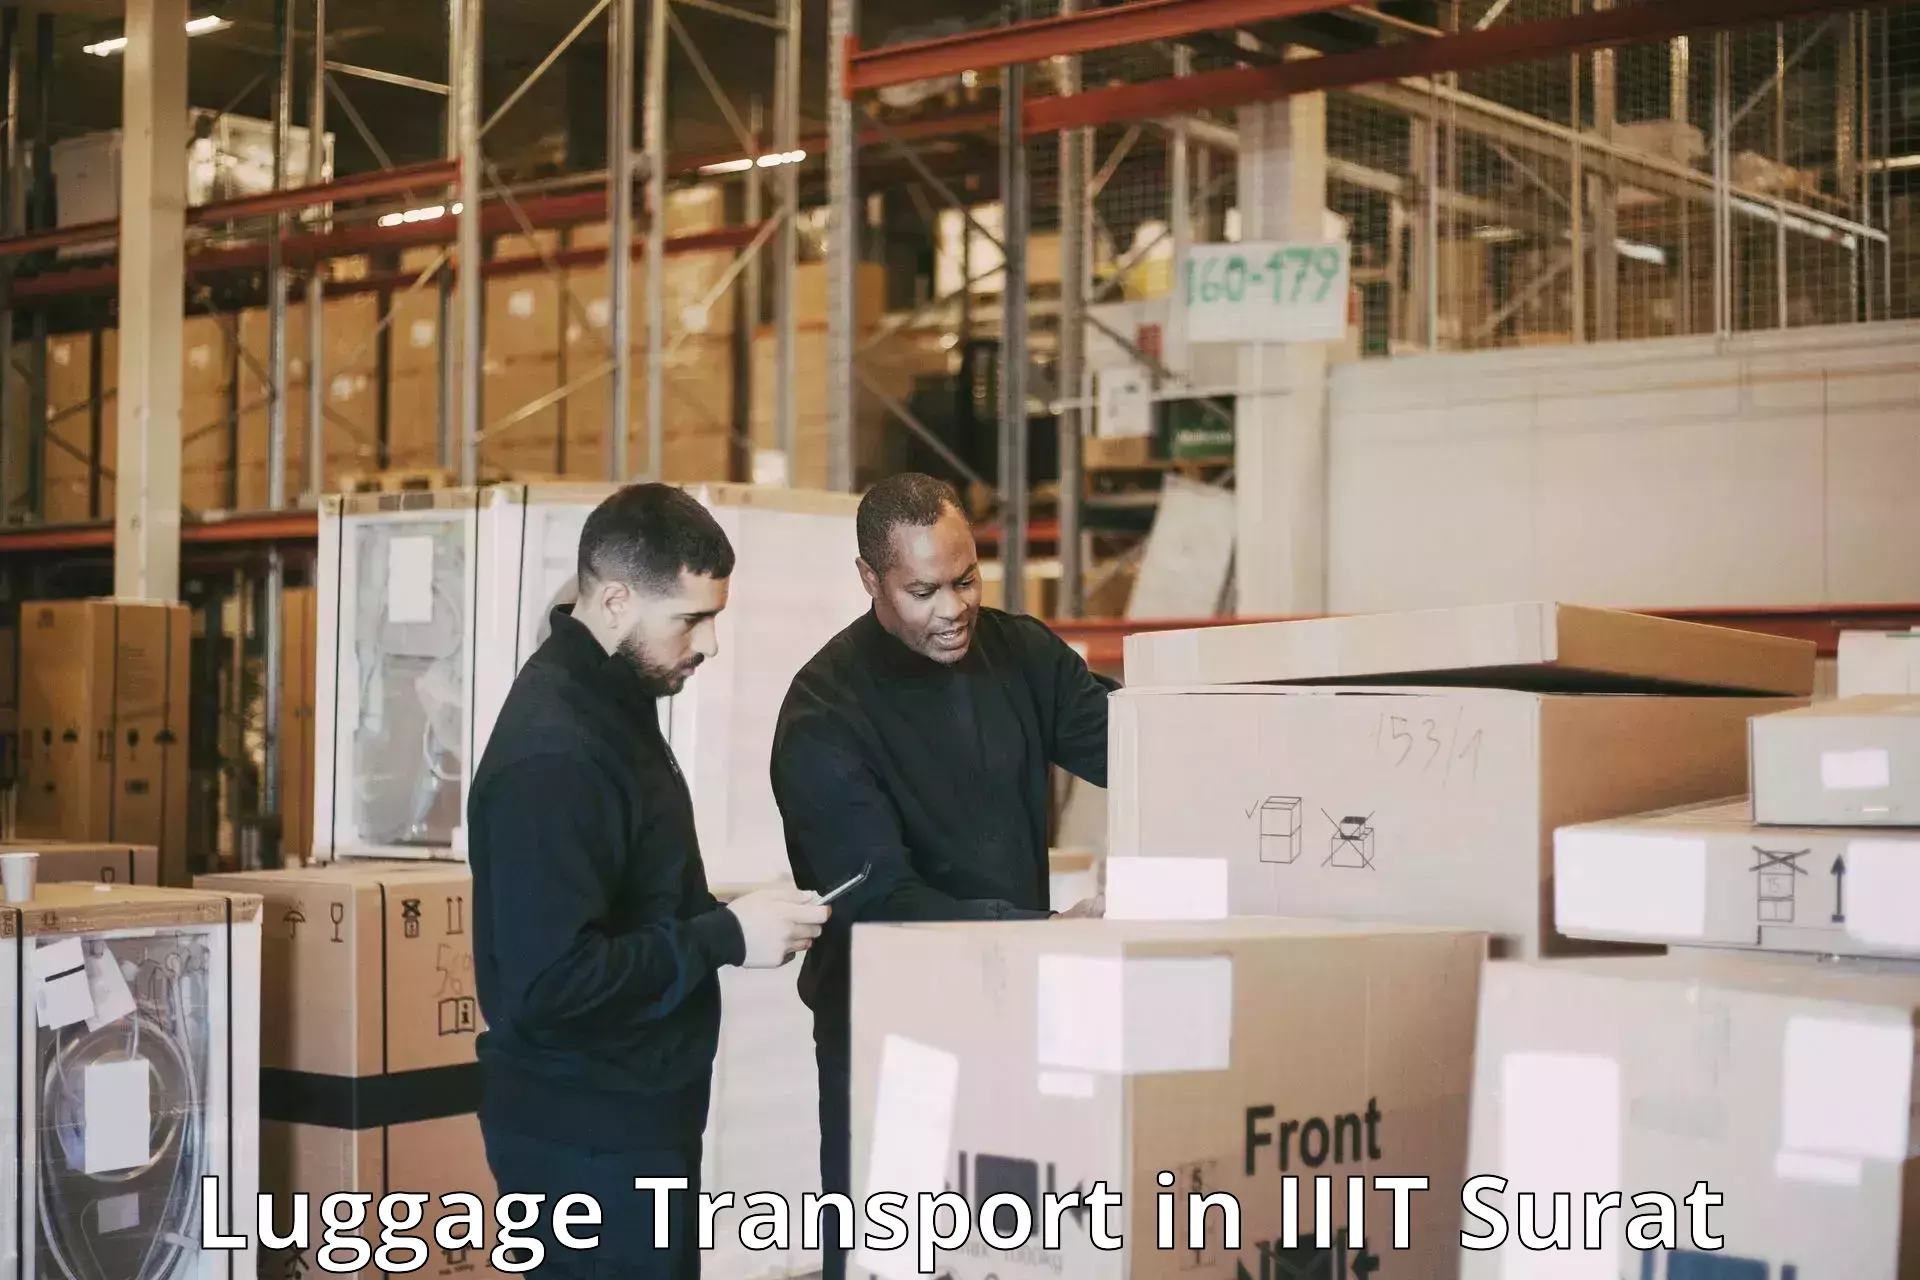 Baggage transport management in IIIT Surat